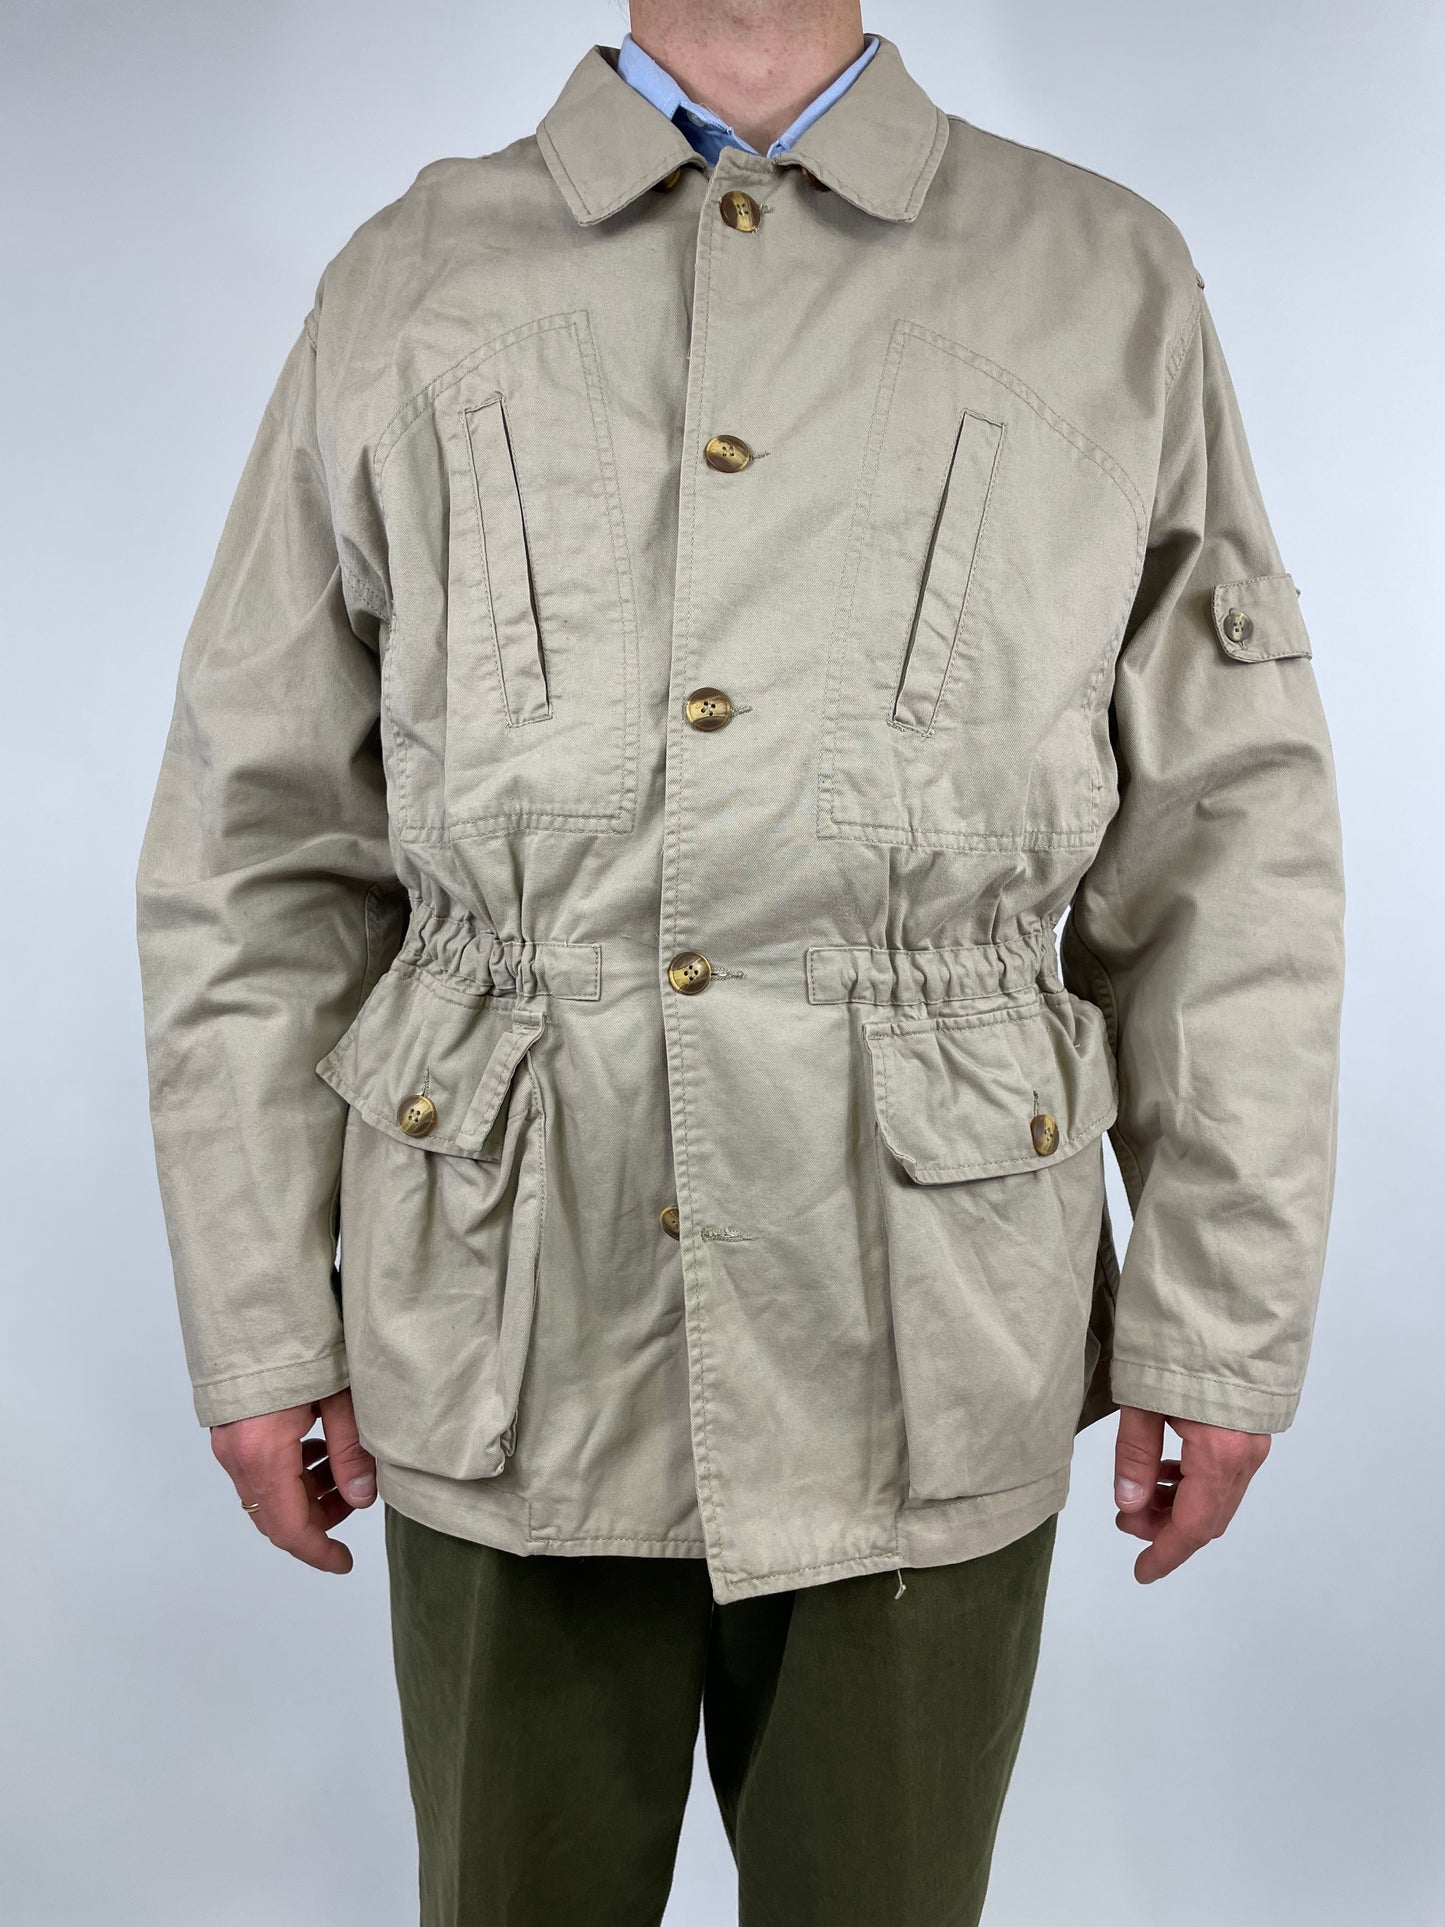 1980s Americanino jacket